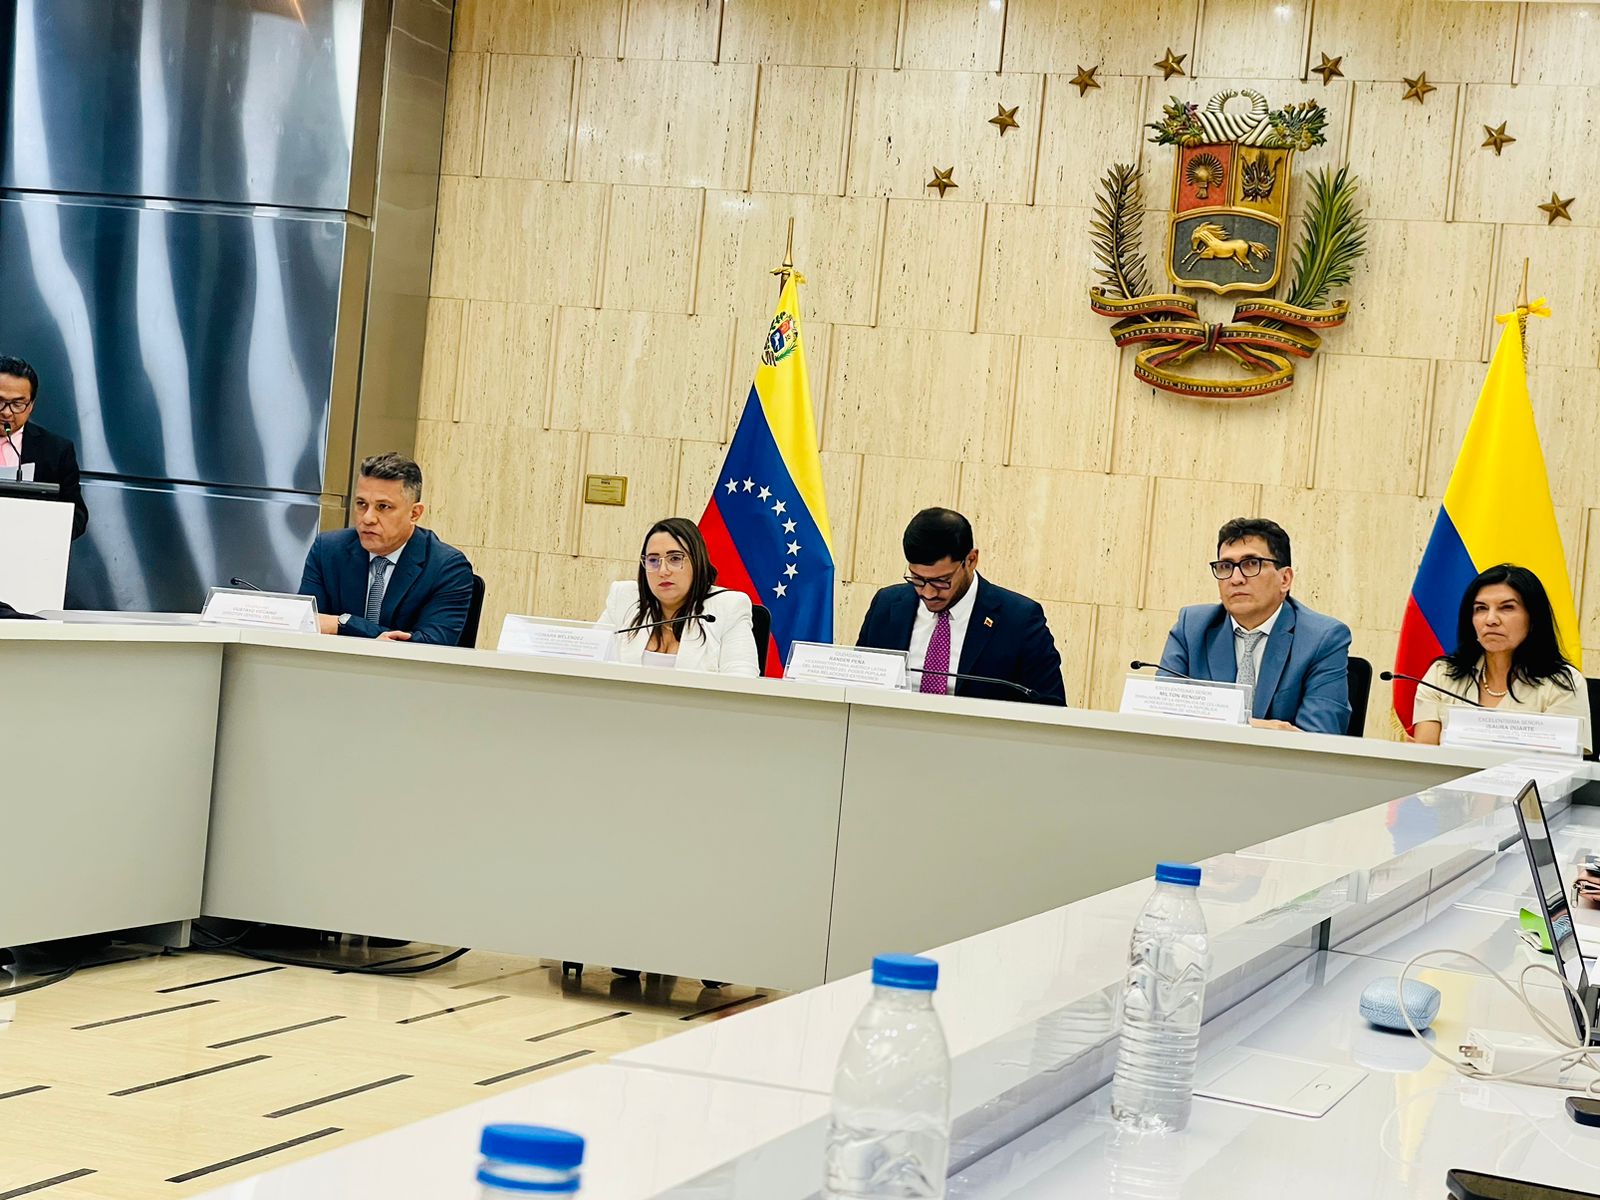 Concluyó con éxito la I Reunión binacional sobre Asuntos Consulares y Migratorios Colombia – Venezuela